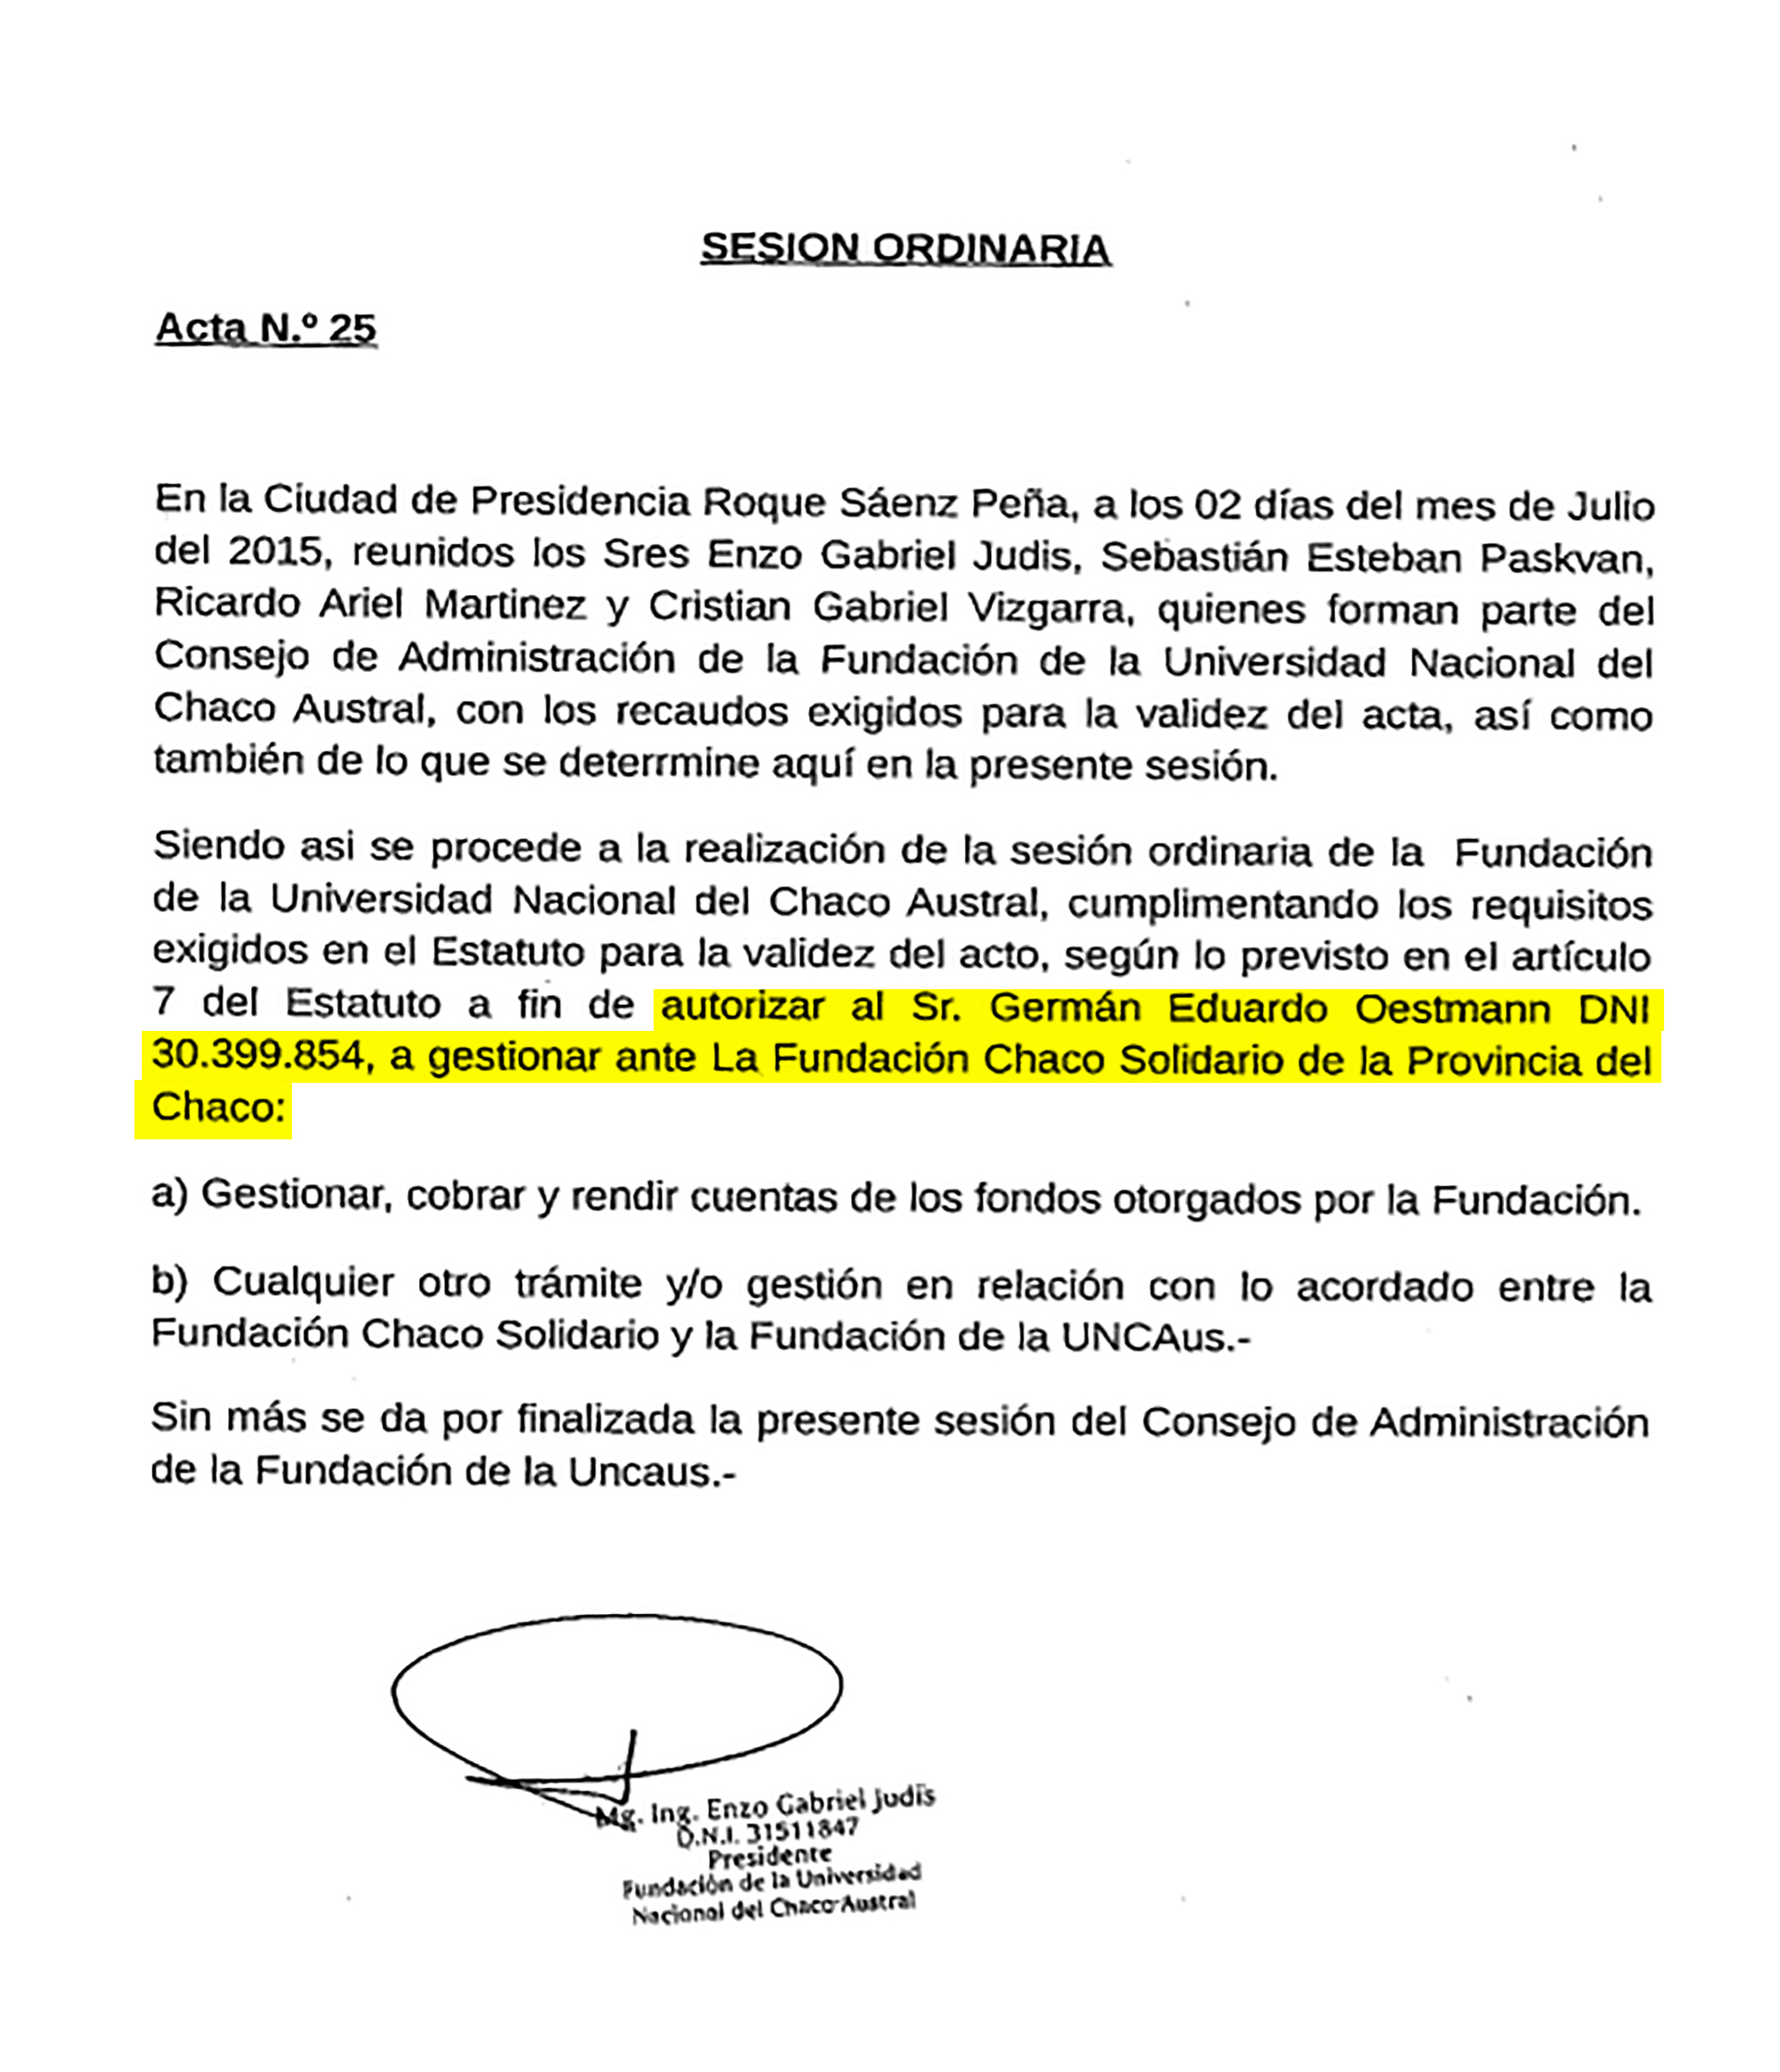 Acta de julio del 2015 por la cual la Fundación de la UNCAUS le otorgaba a Oestmann facultades para gestionar fondos ante la Fundación Chaco Solidario